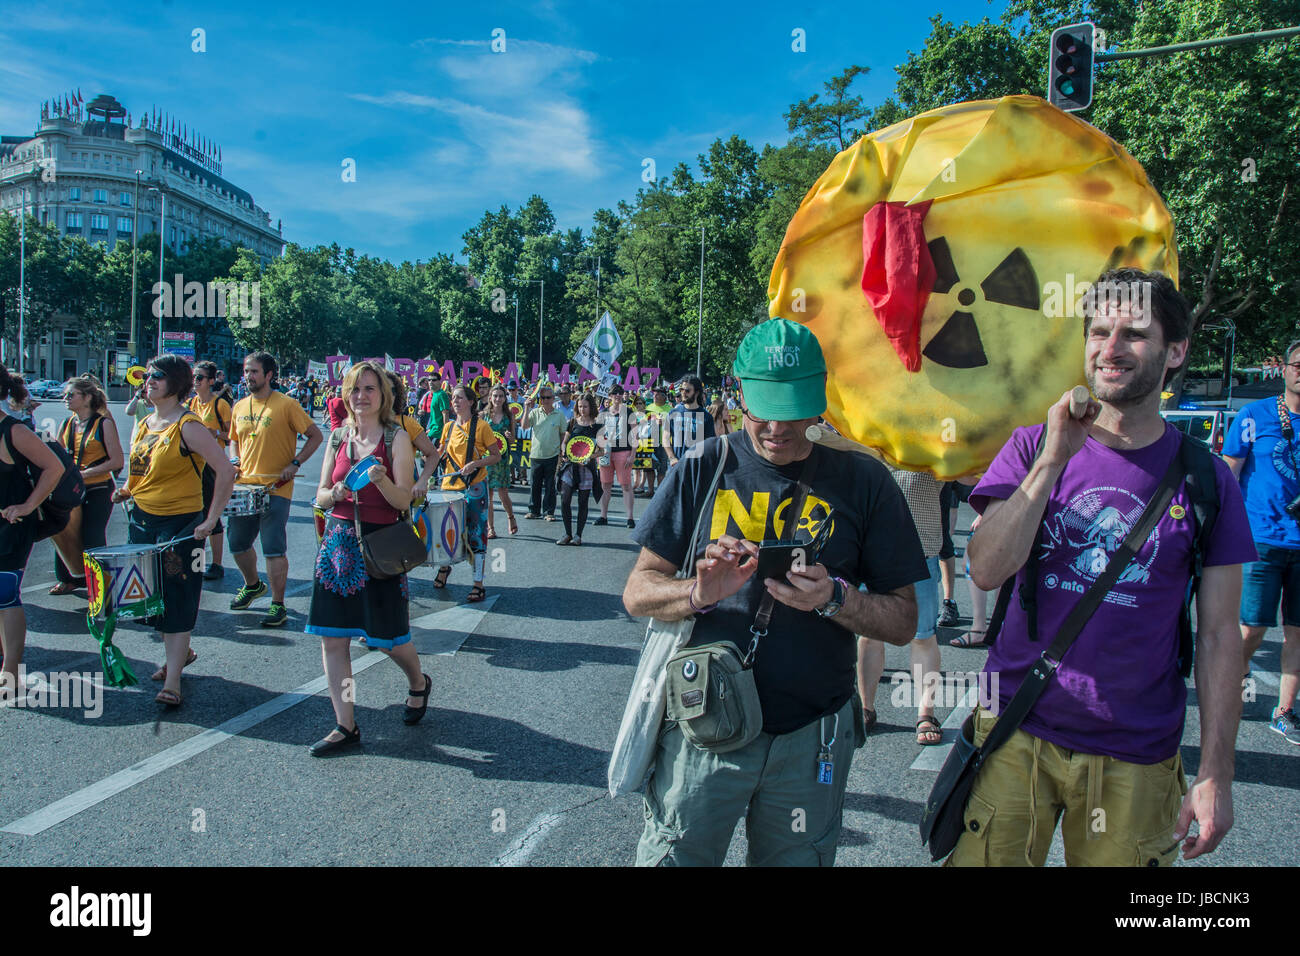 Madrid, Espagne. 10 Juin, 2017. Manifestation contre l'énergie nucléaire sur les rues de Madrid, les gens de l'Espagne et Portugal formulaire démontre dans les rues près de la gare d'Atocha Crédit : Alberto Ramírez Sibaja/Alamy Live News Banque D'Images